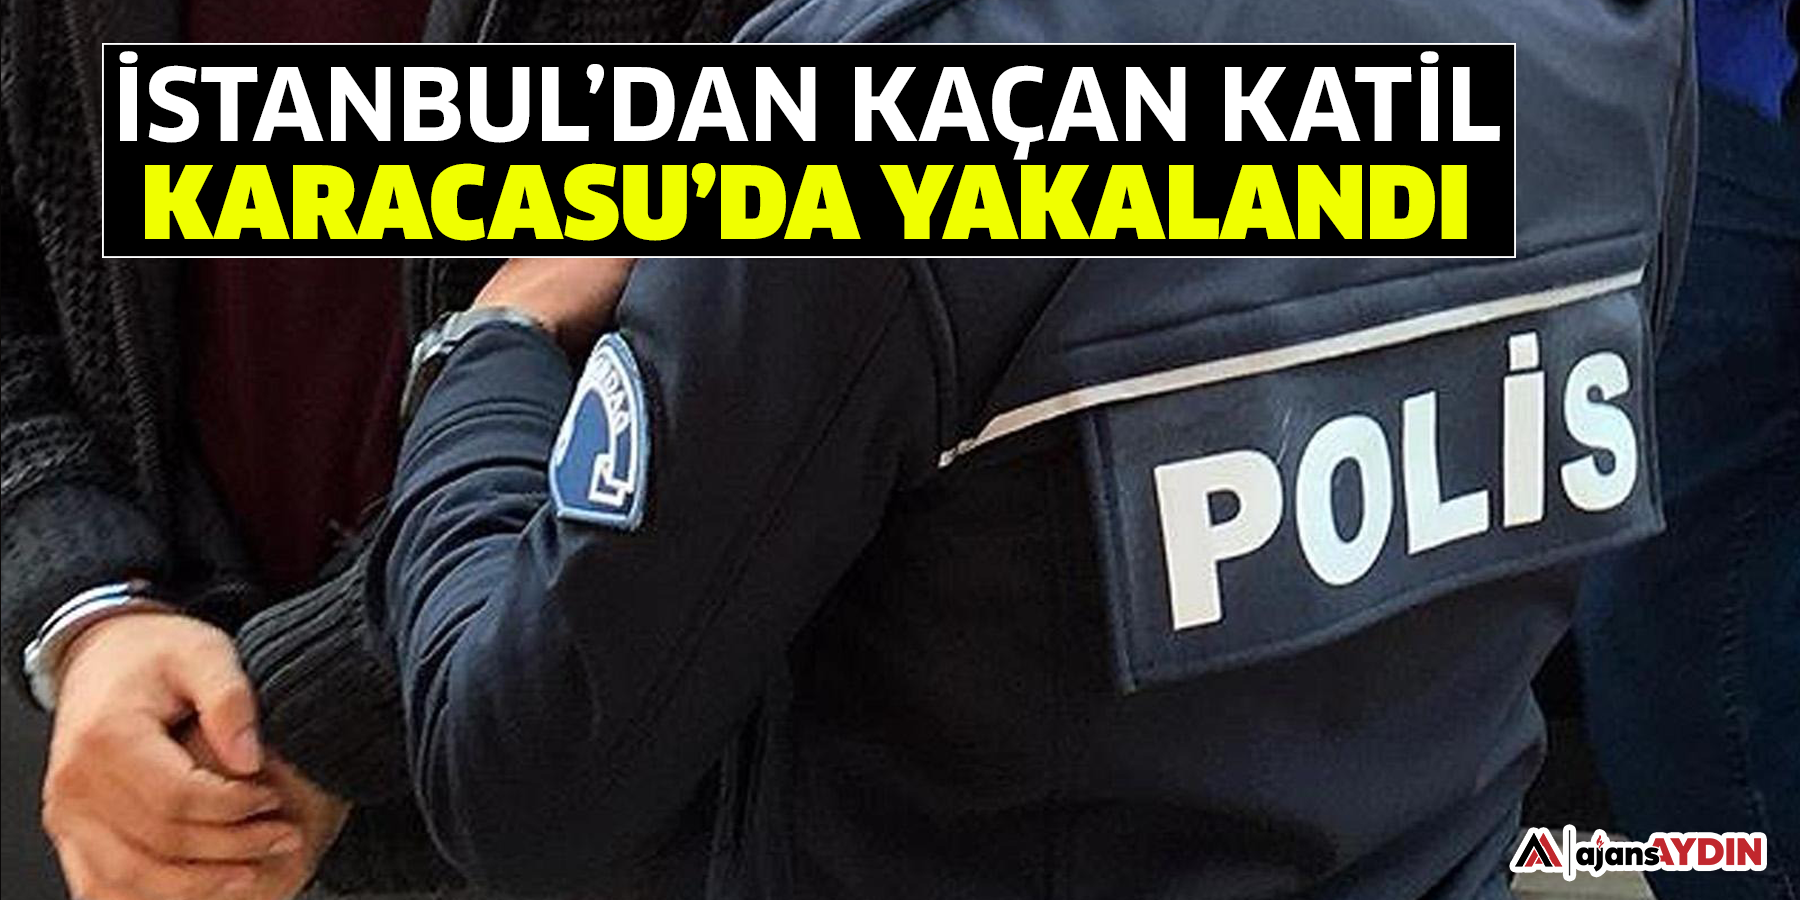 İstanbul’dan kaçan katil Karacasu’da yakalandı